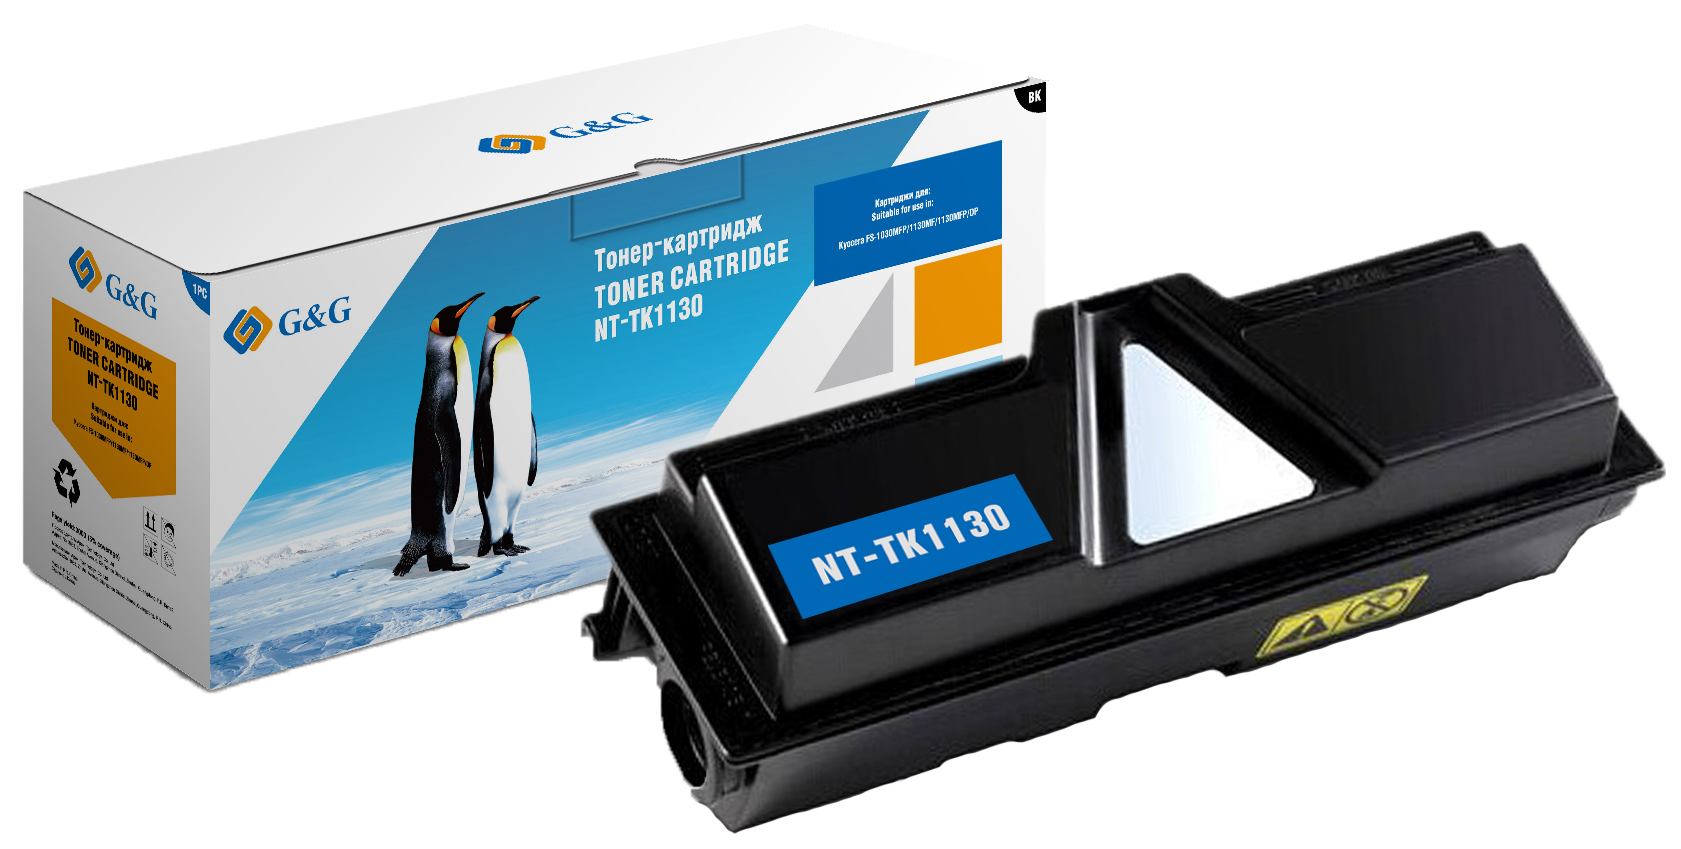 Картридж для лазерного принтера G&G NT-TK1130, черный